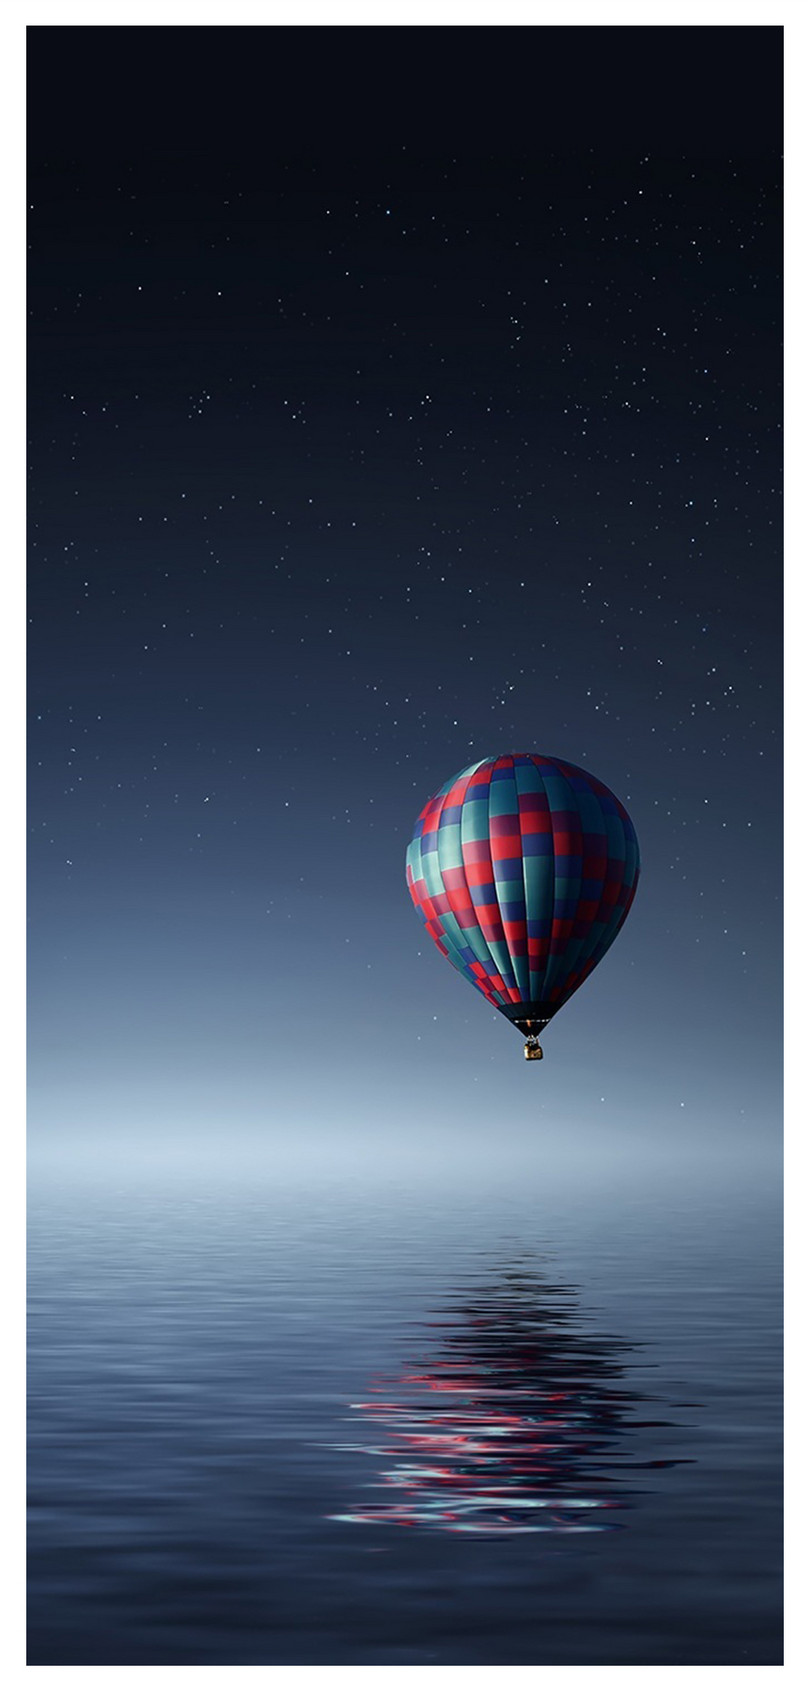 Balon Udara Panas Wallpaper Ponsel Di Atas Air - Hot Air Balloon - HD Wallpaper 